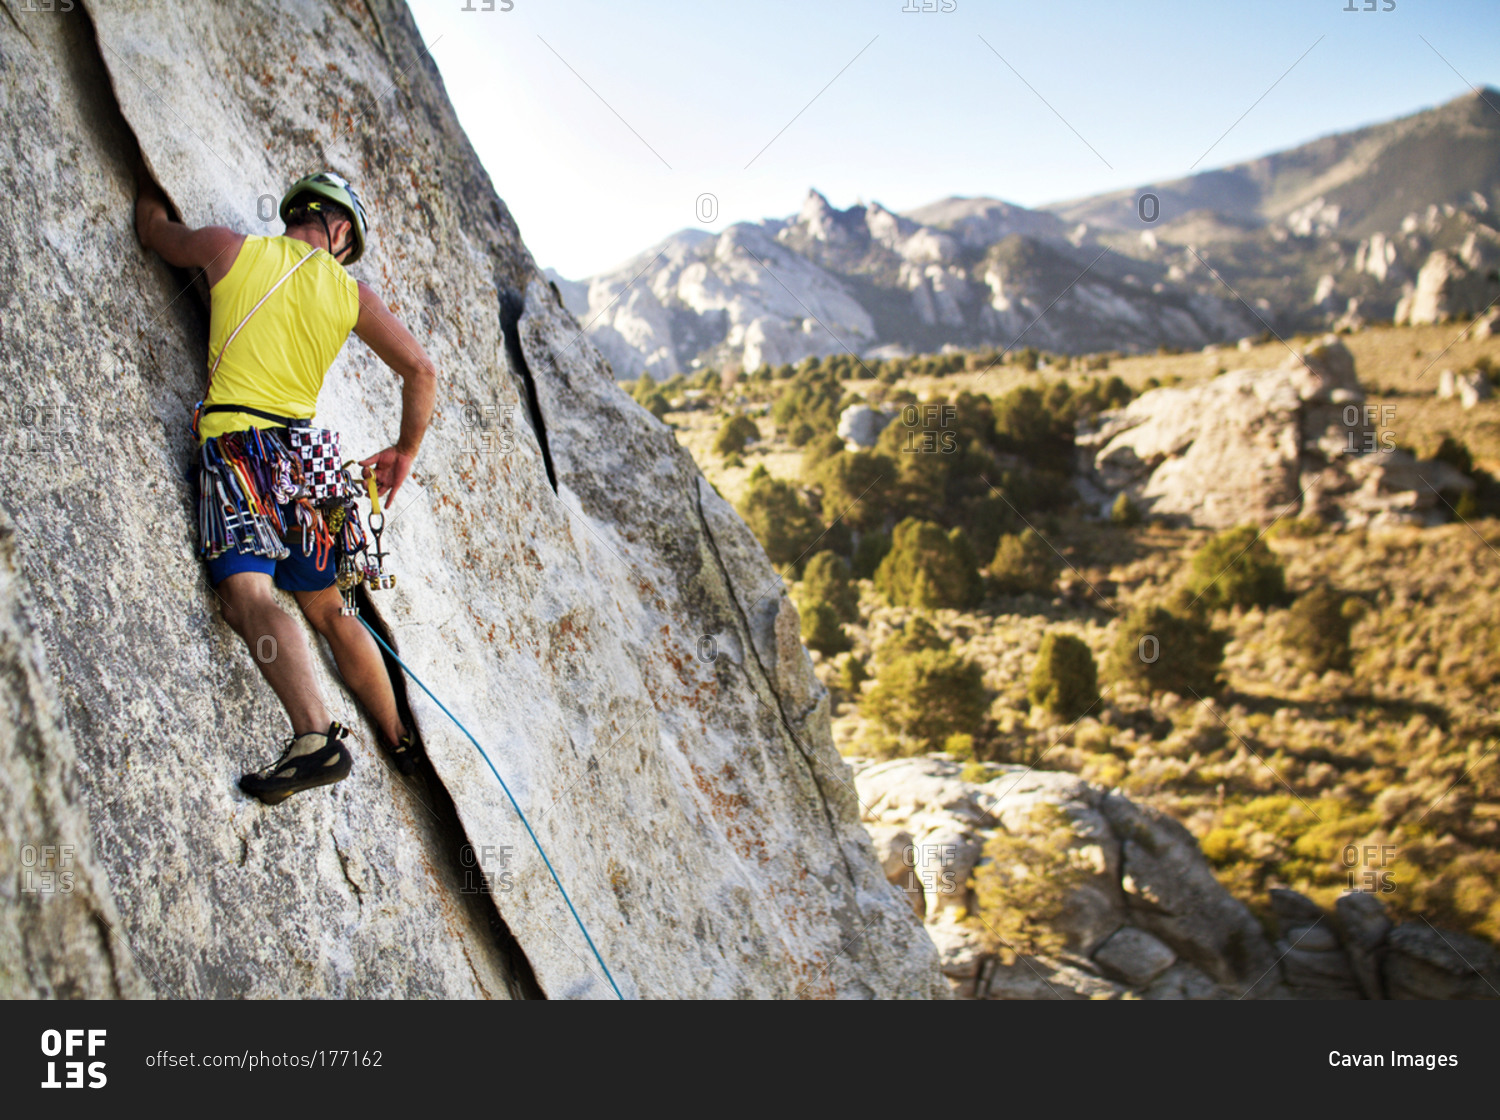 A rock climber reaches for an anchor